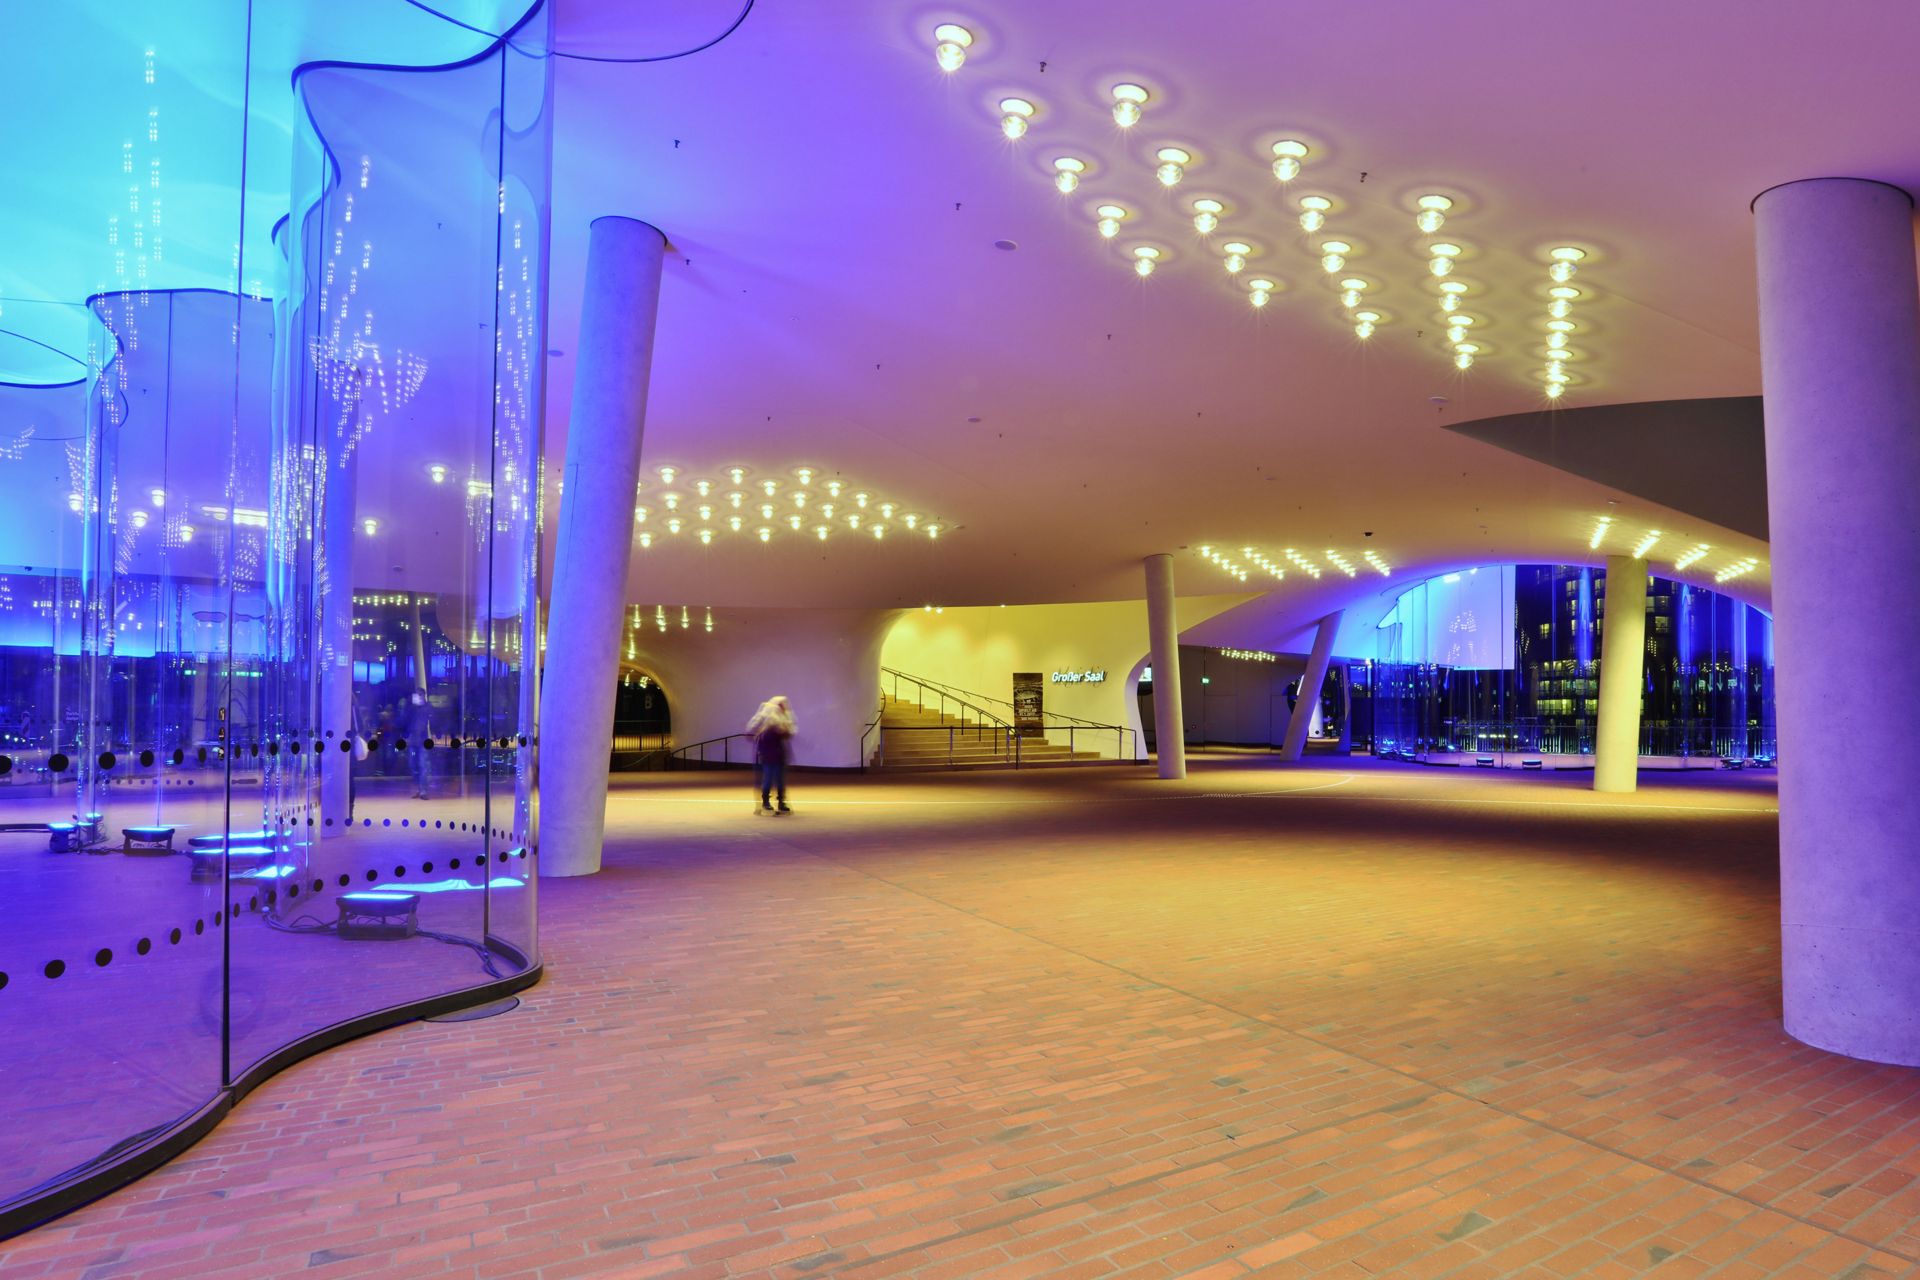 Elbphilharmonie Concert Hall, Hamburg